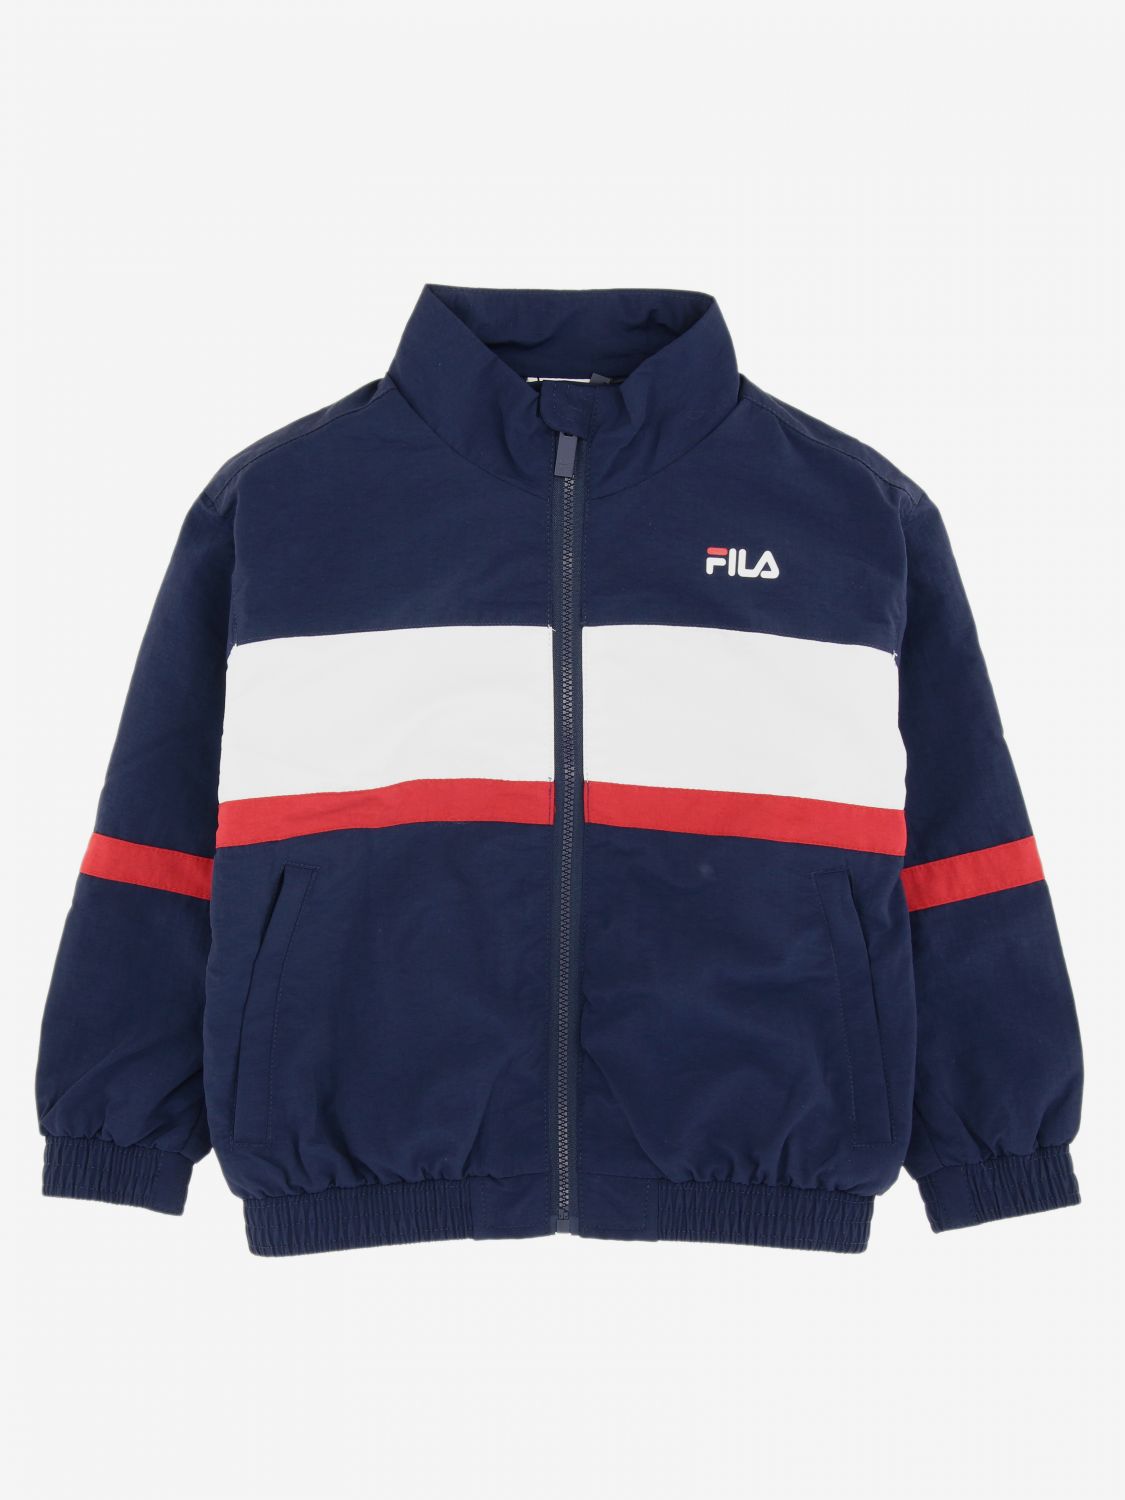 fila jacket for boys